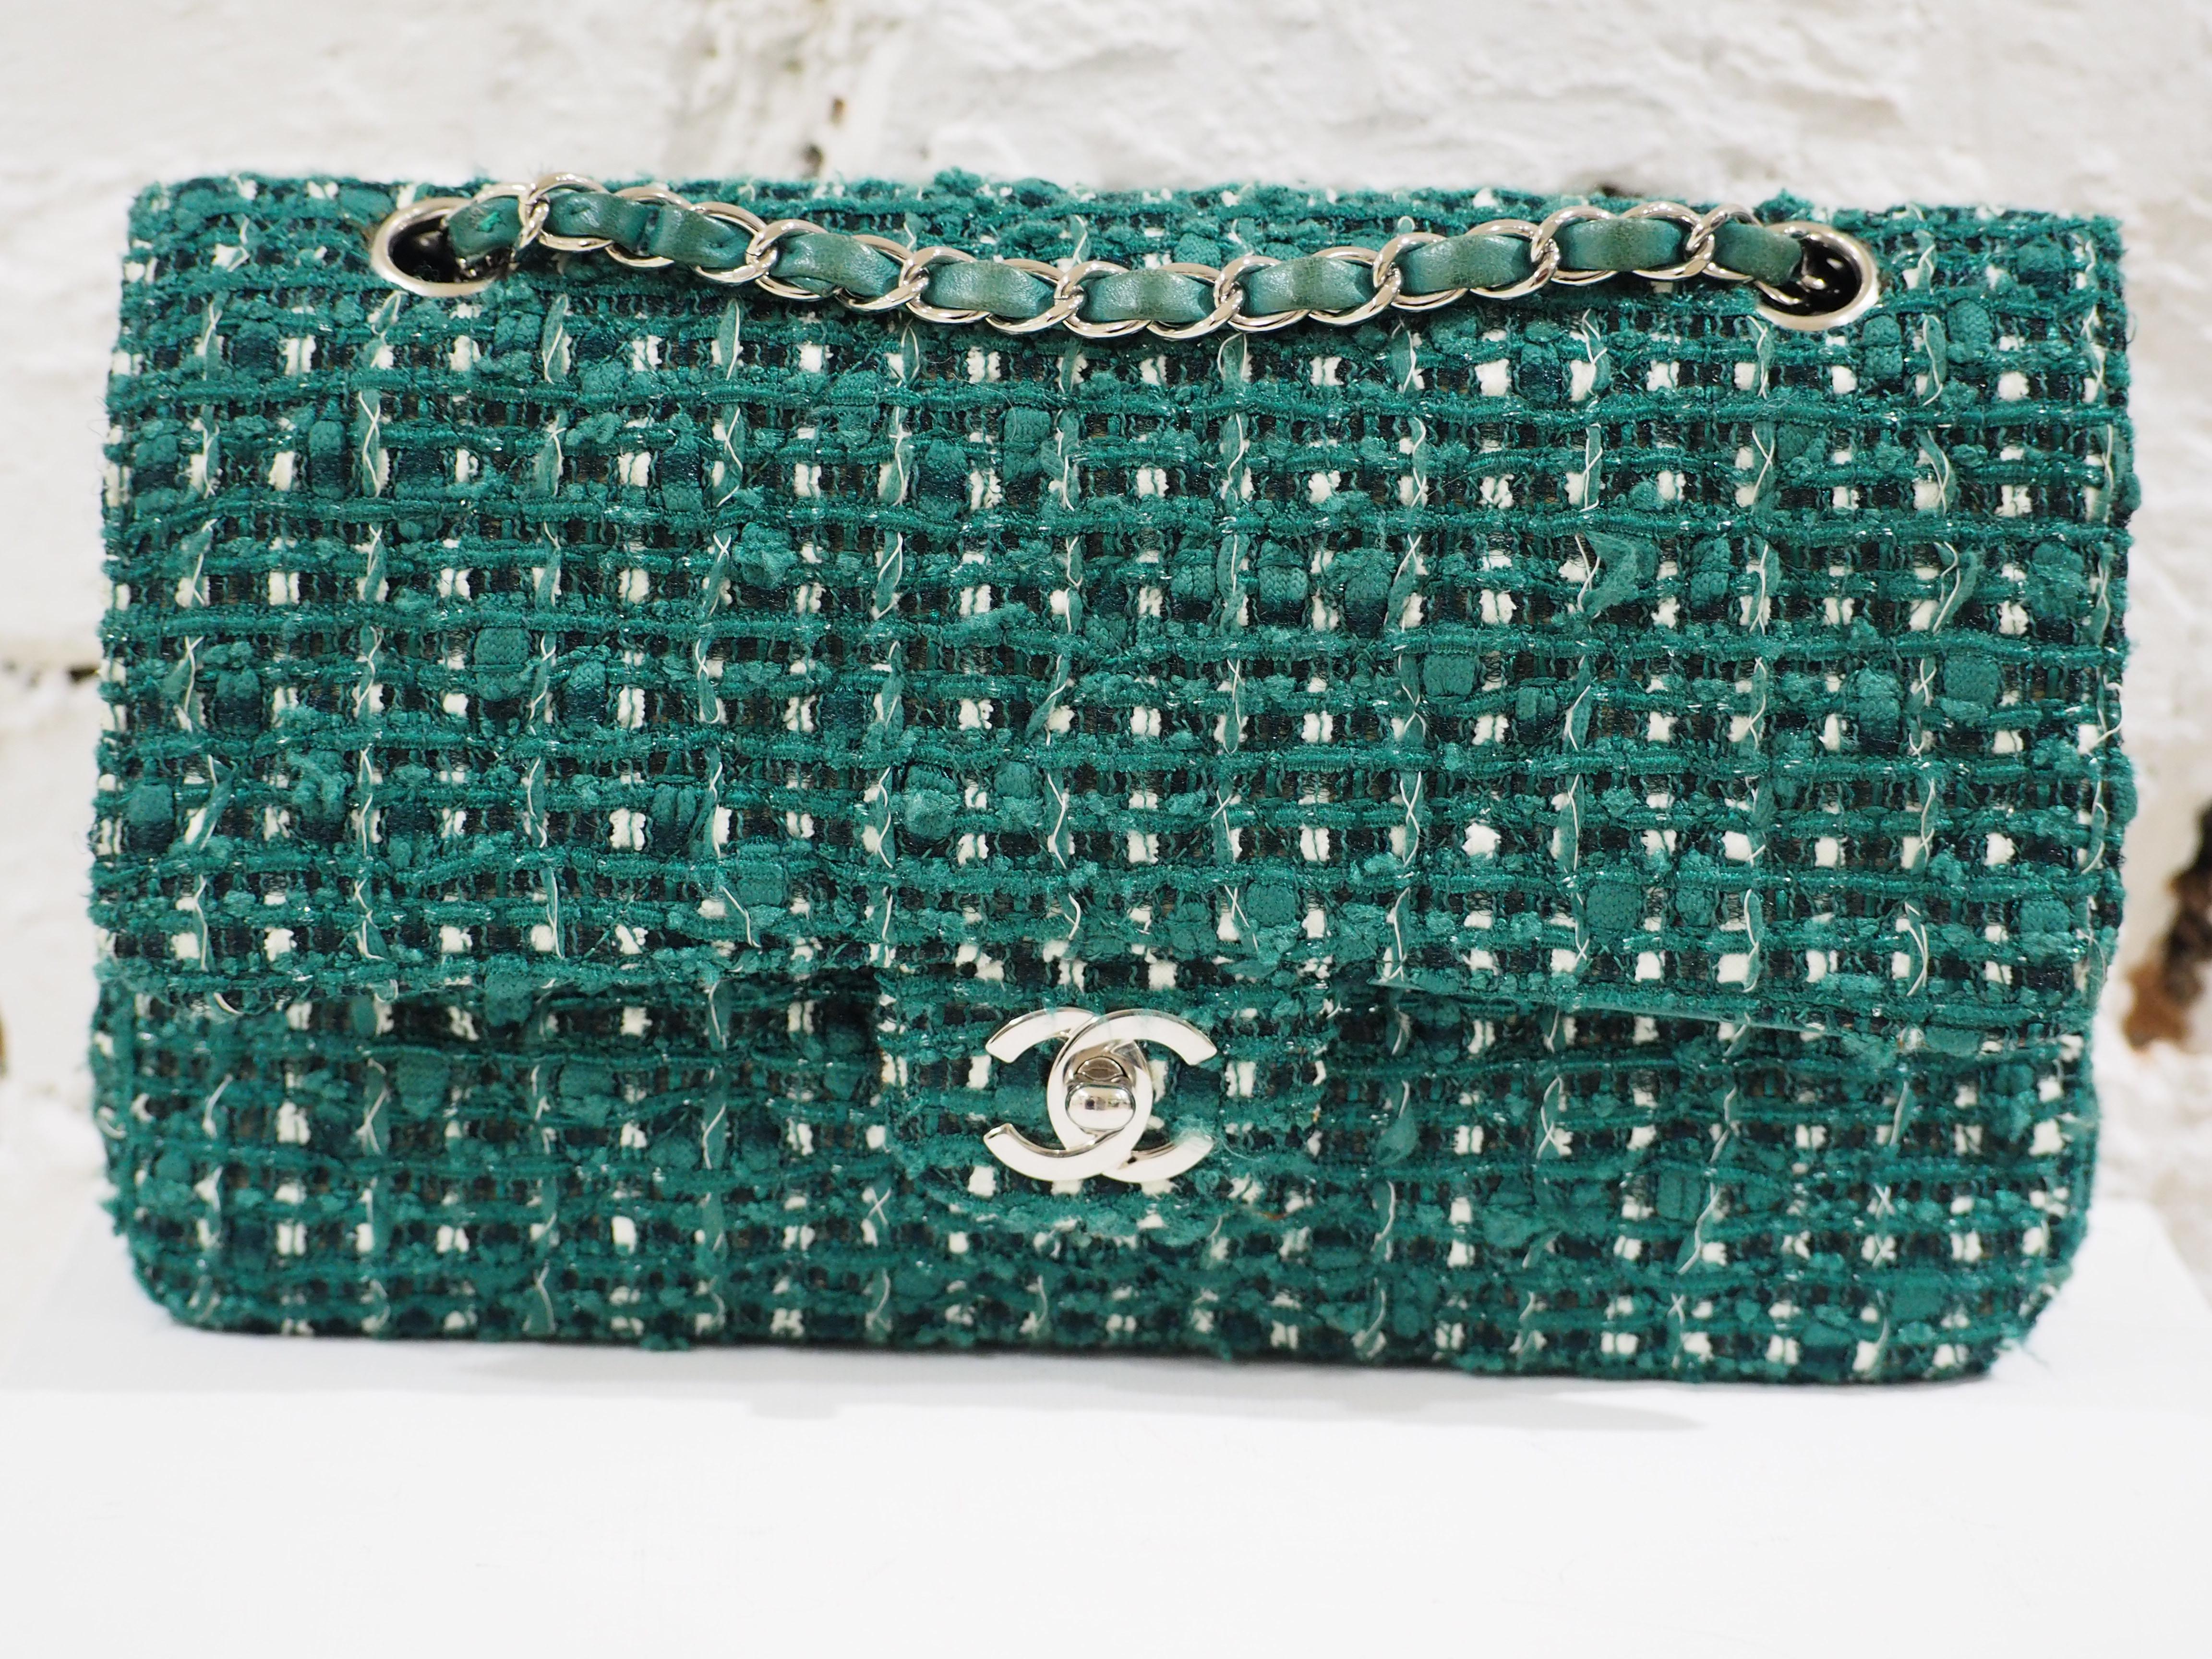 Chanel 2.55 green tweed shoulder bag 6